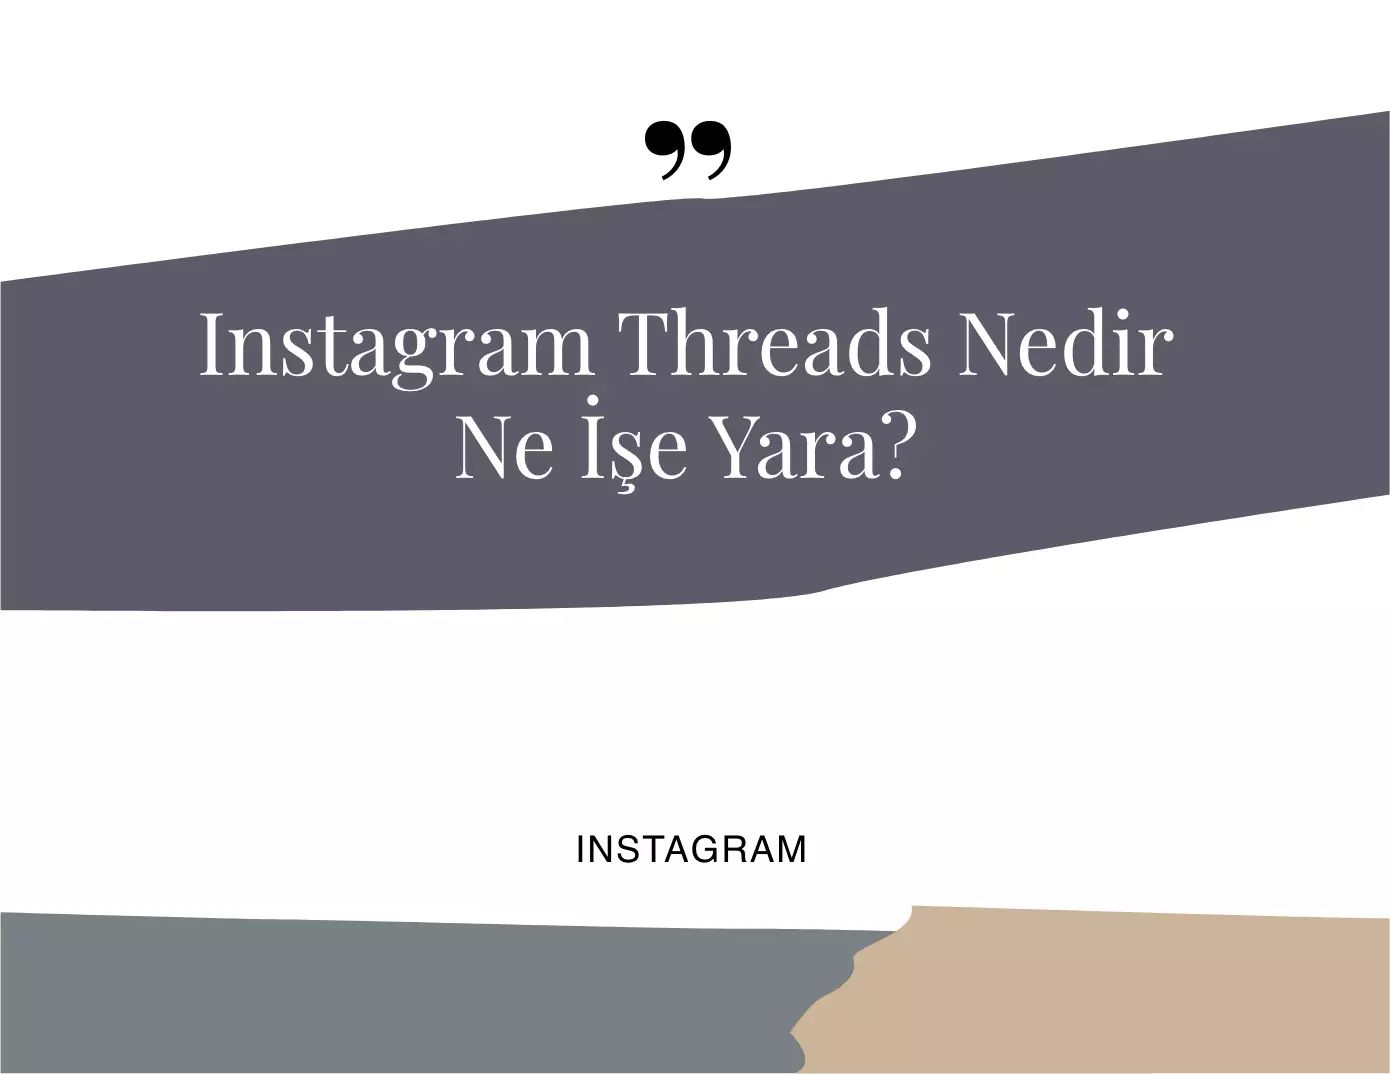 Instagram Threads Nedir? Ne İşe Yarar?